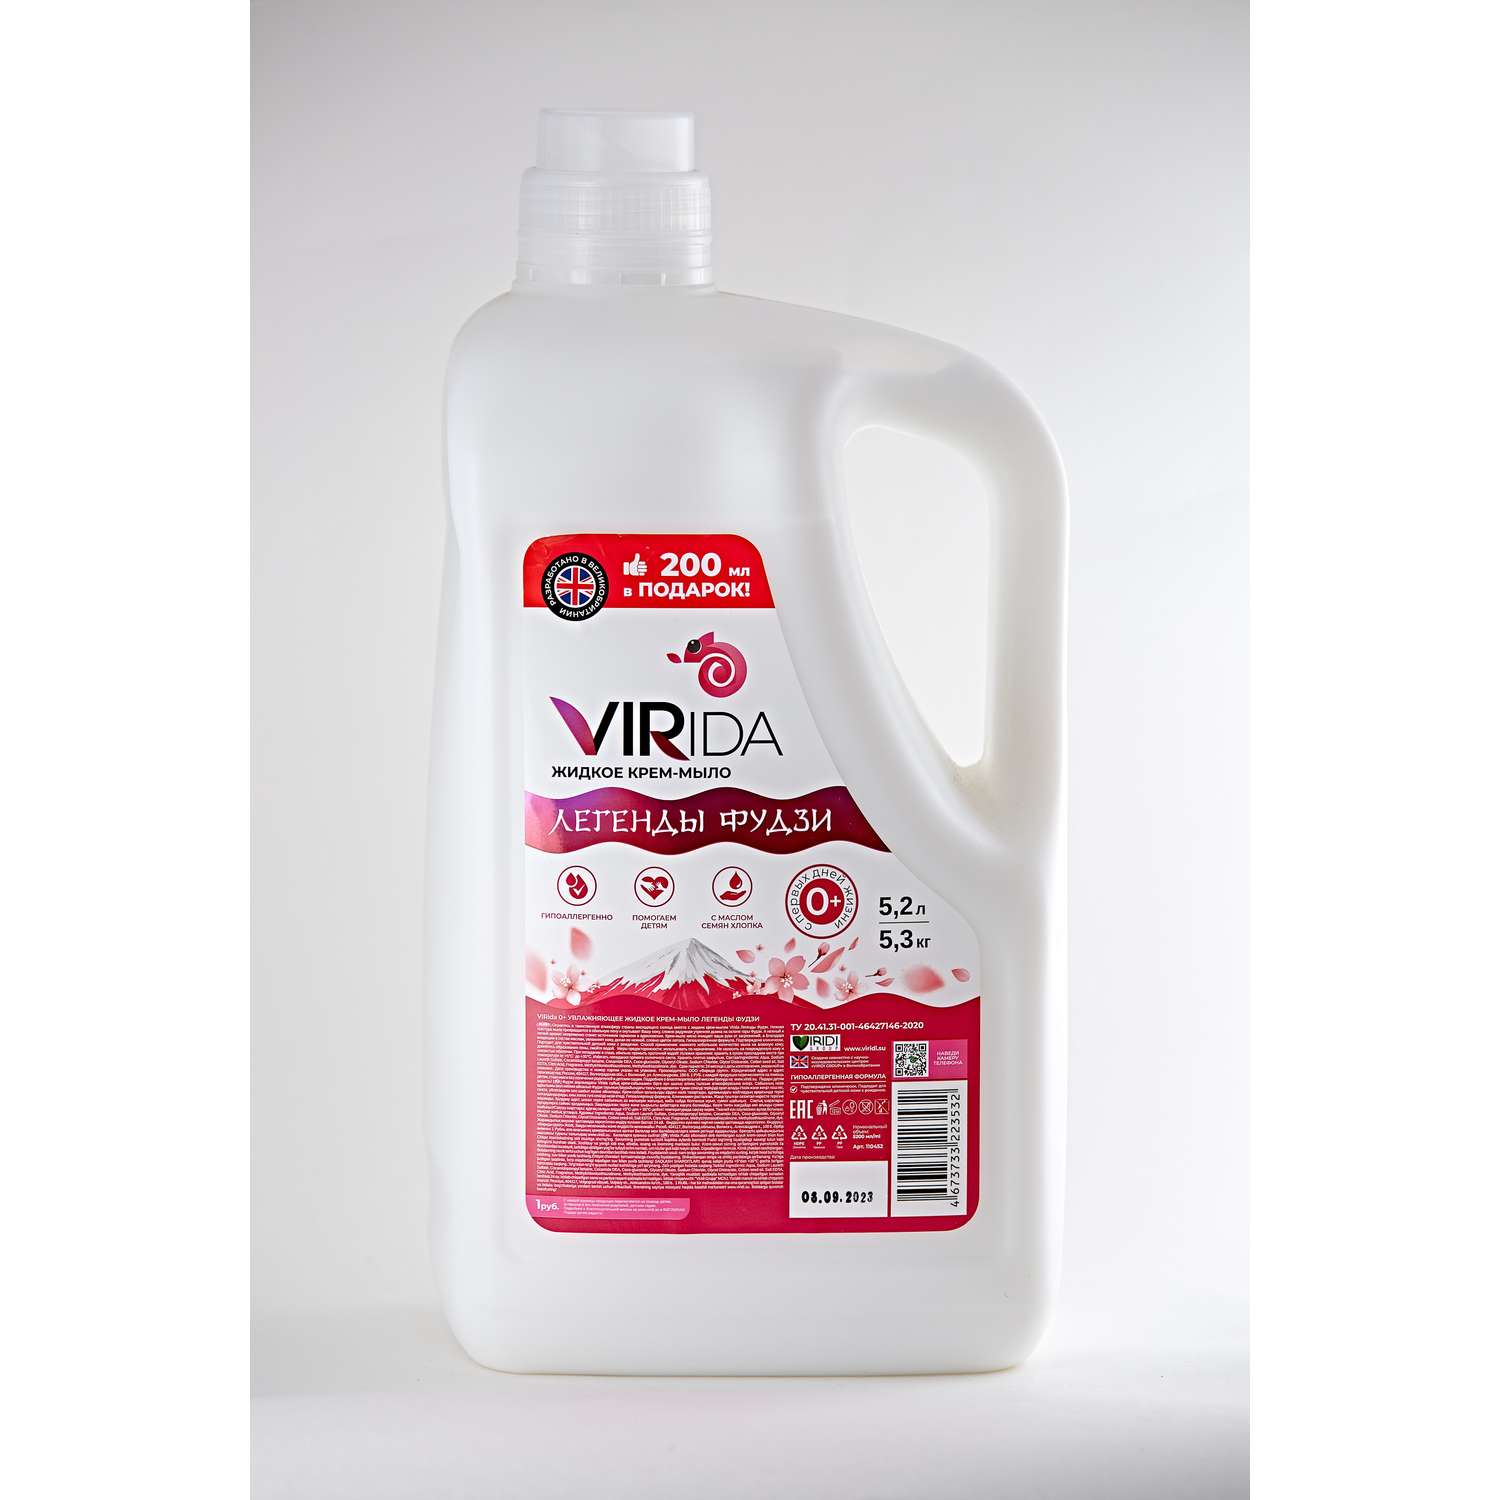 Жидкое мыло VIRIDA с антибактериальным эффектом Легенды Фудзи 5.2 л - фото 1